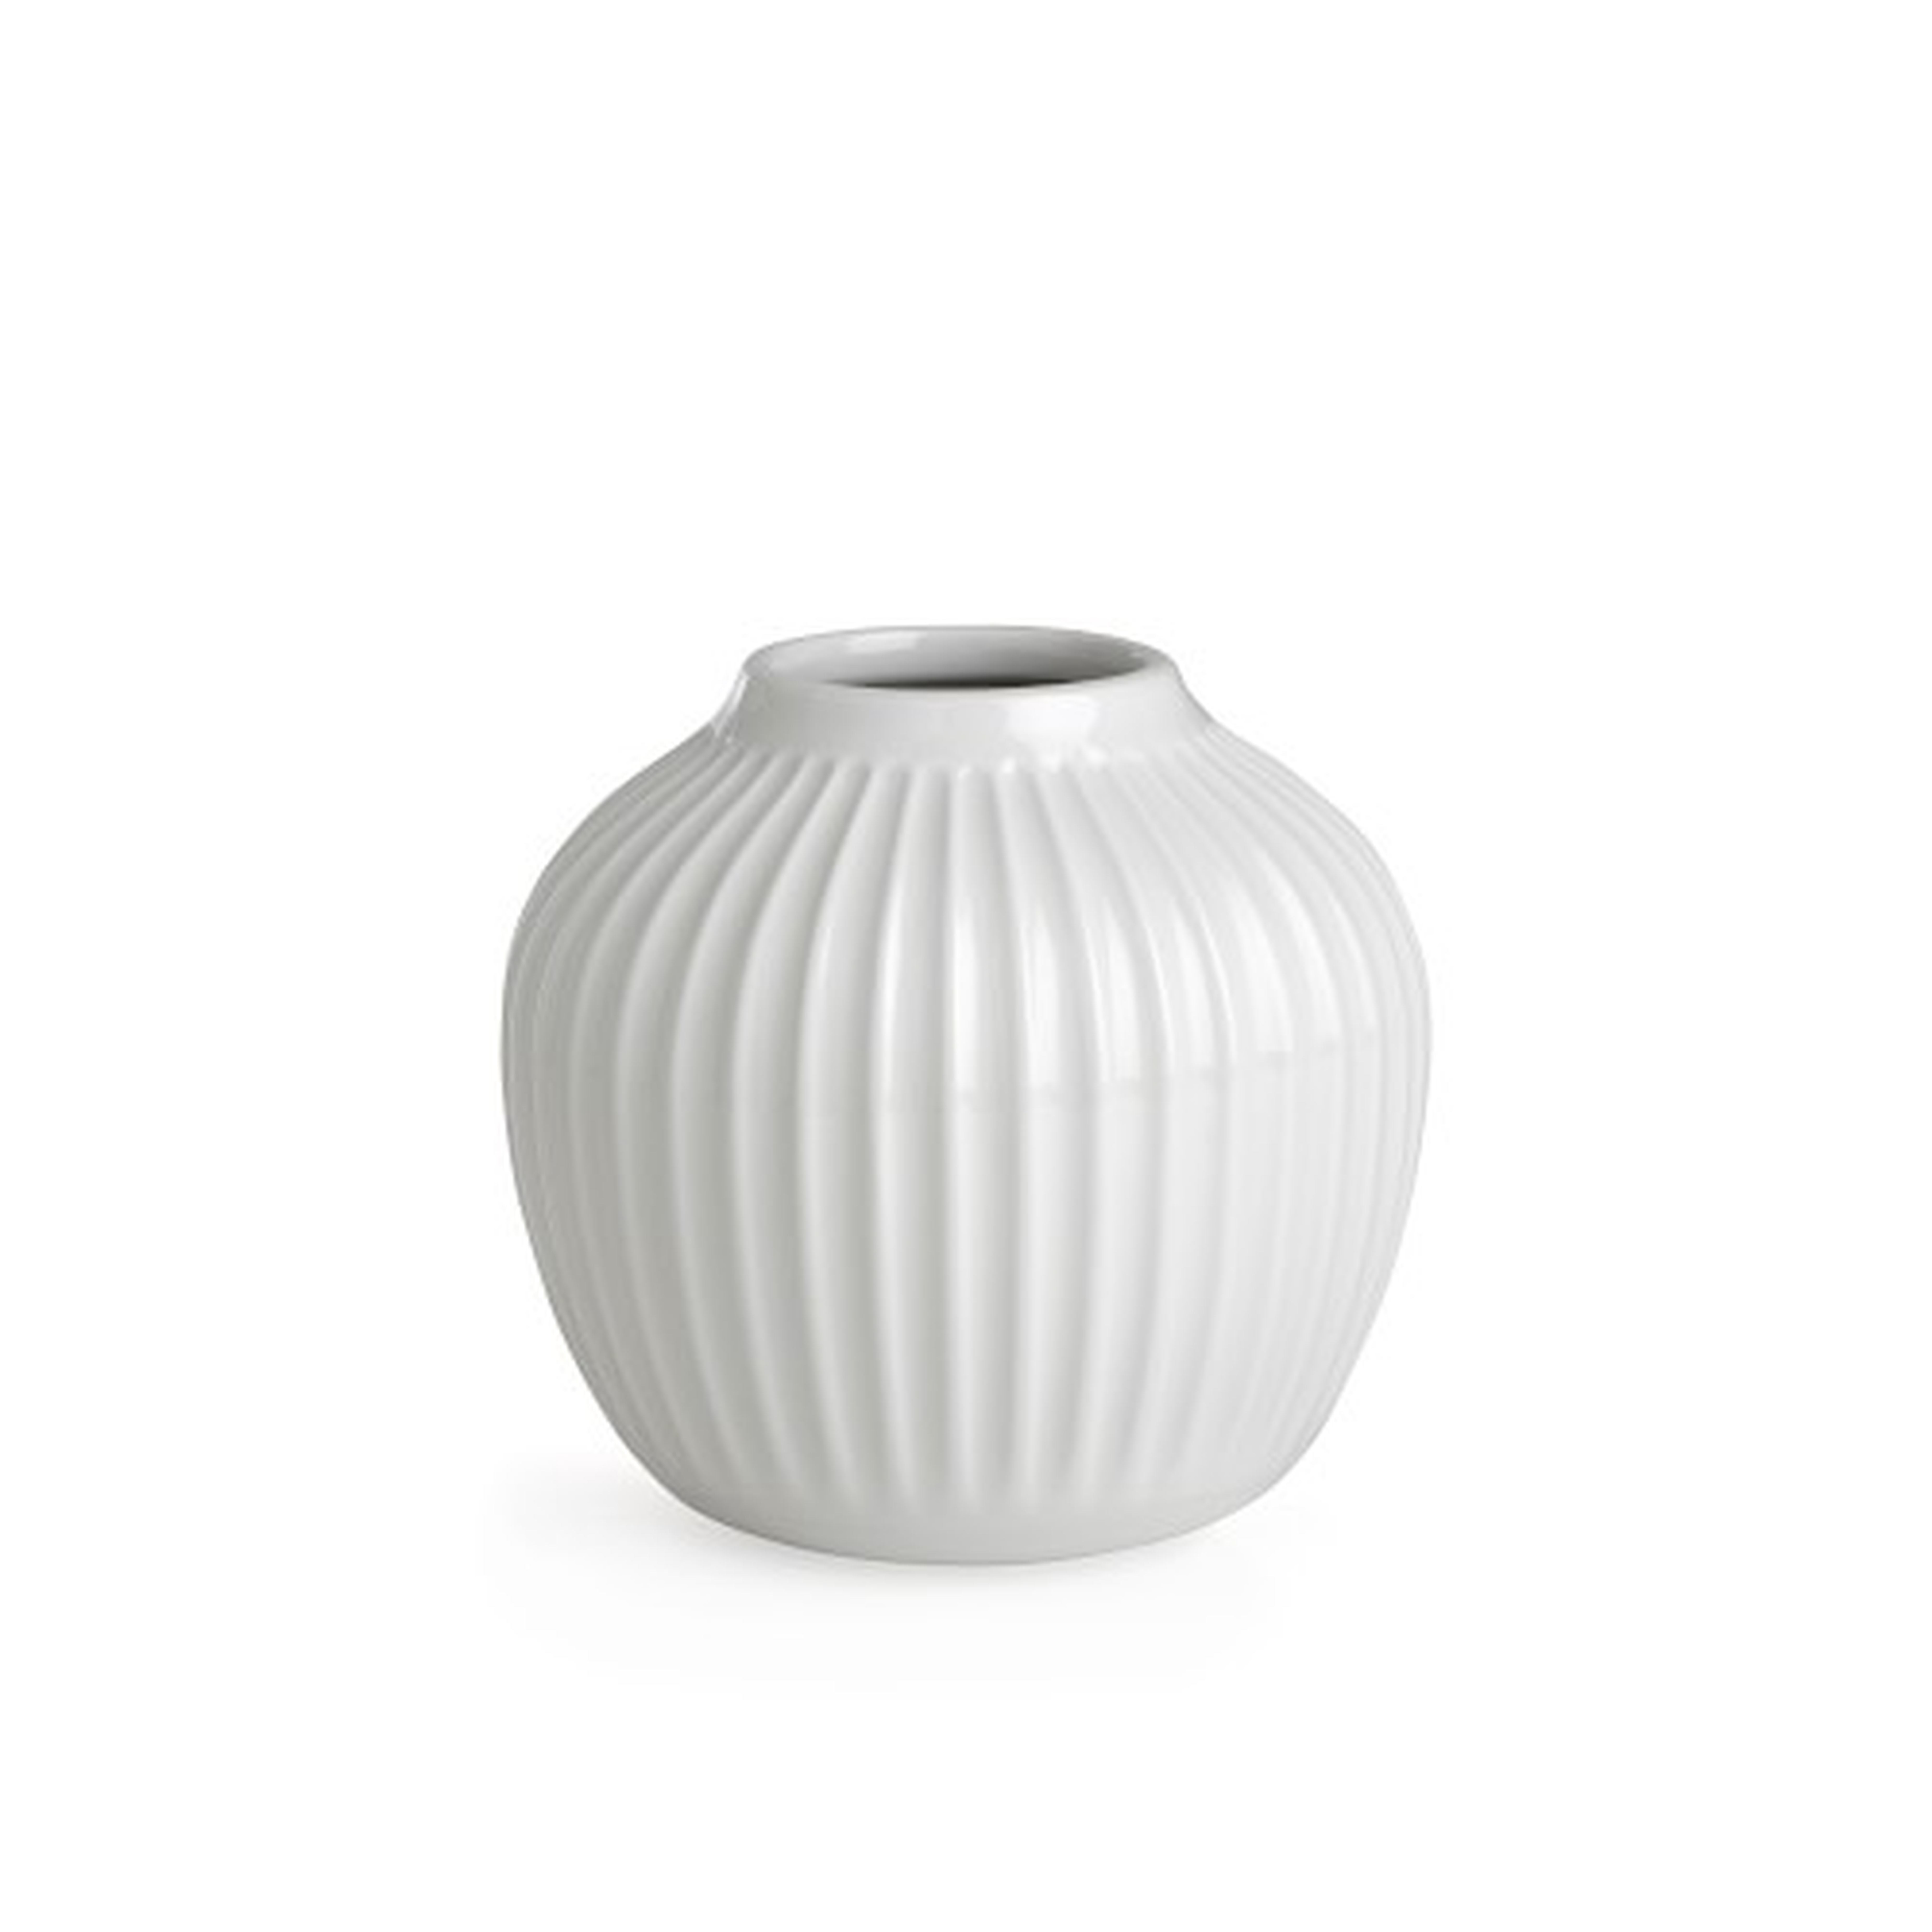 Kahler Hammershoi Vase, White, 4.9" - Williams Sonoma